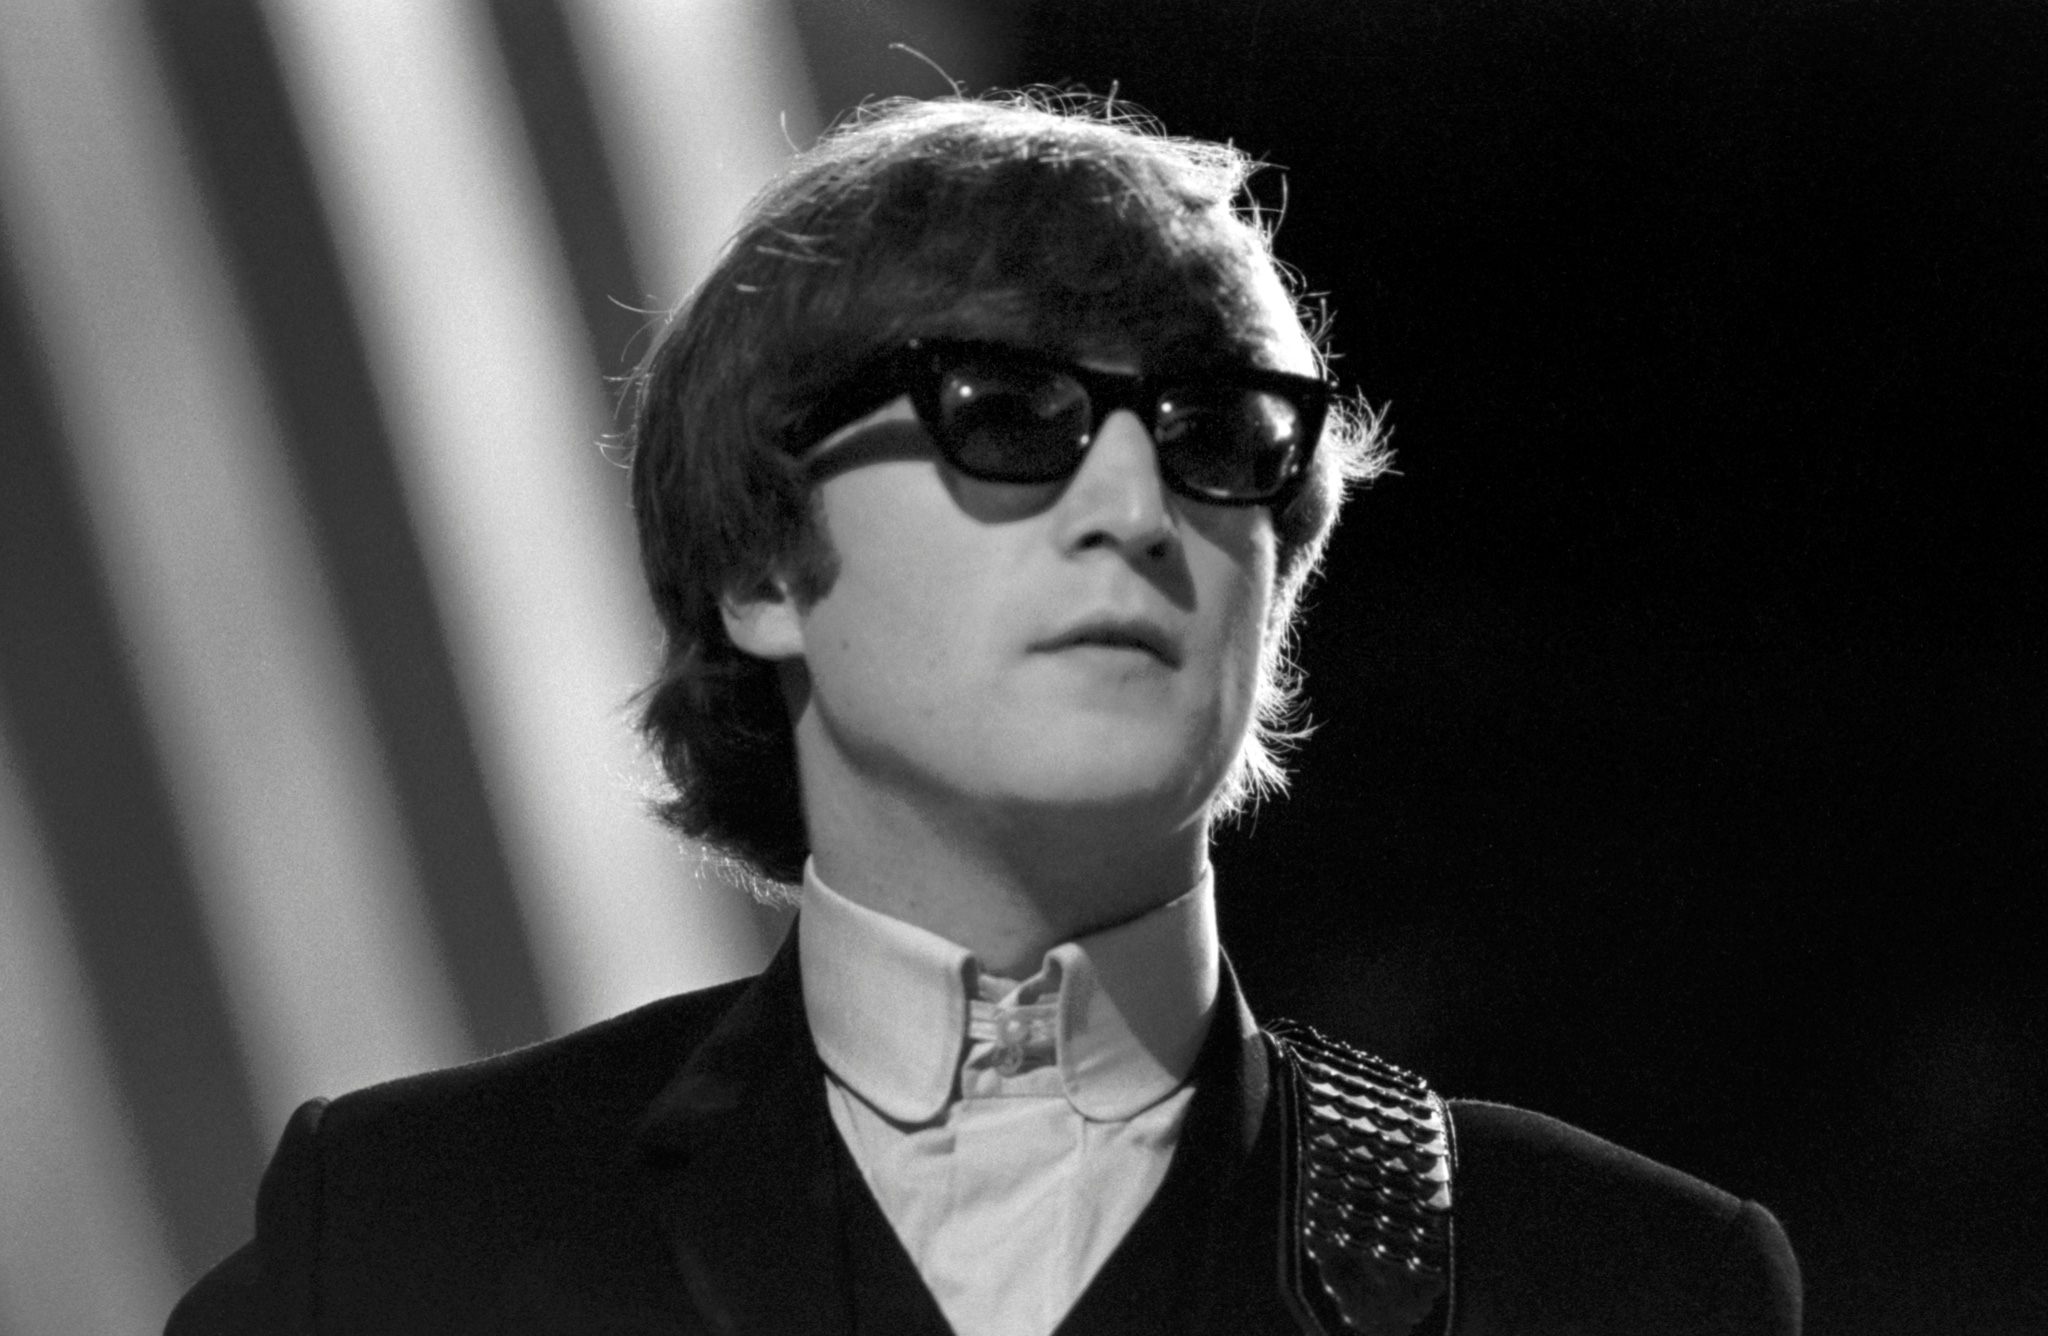 Buy Sunny Pro John Lennon Sunglasses For Boys Alloy Unisex Eyeglasses For  Men Red at Amazon.in